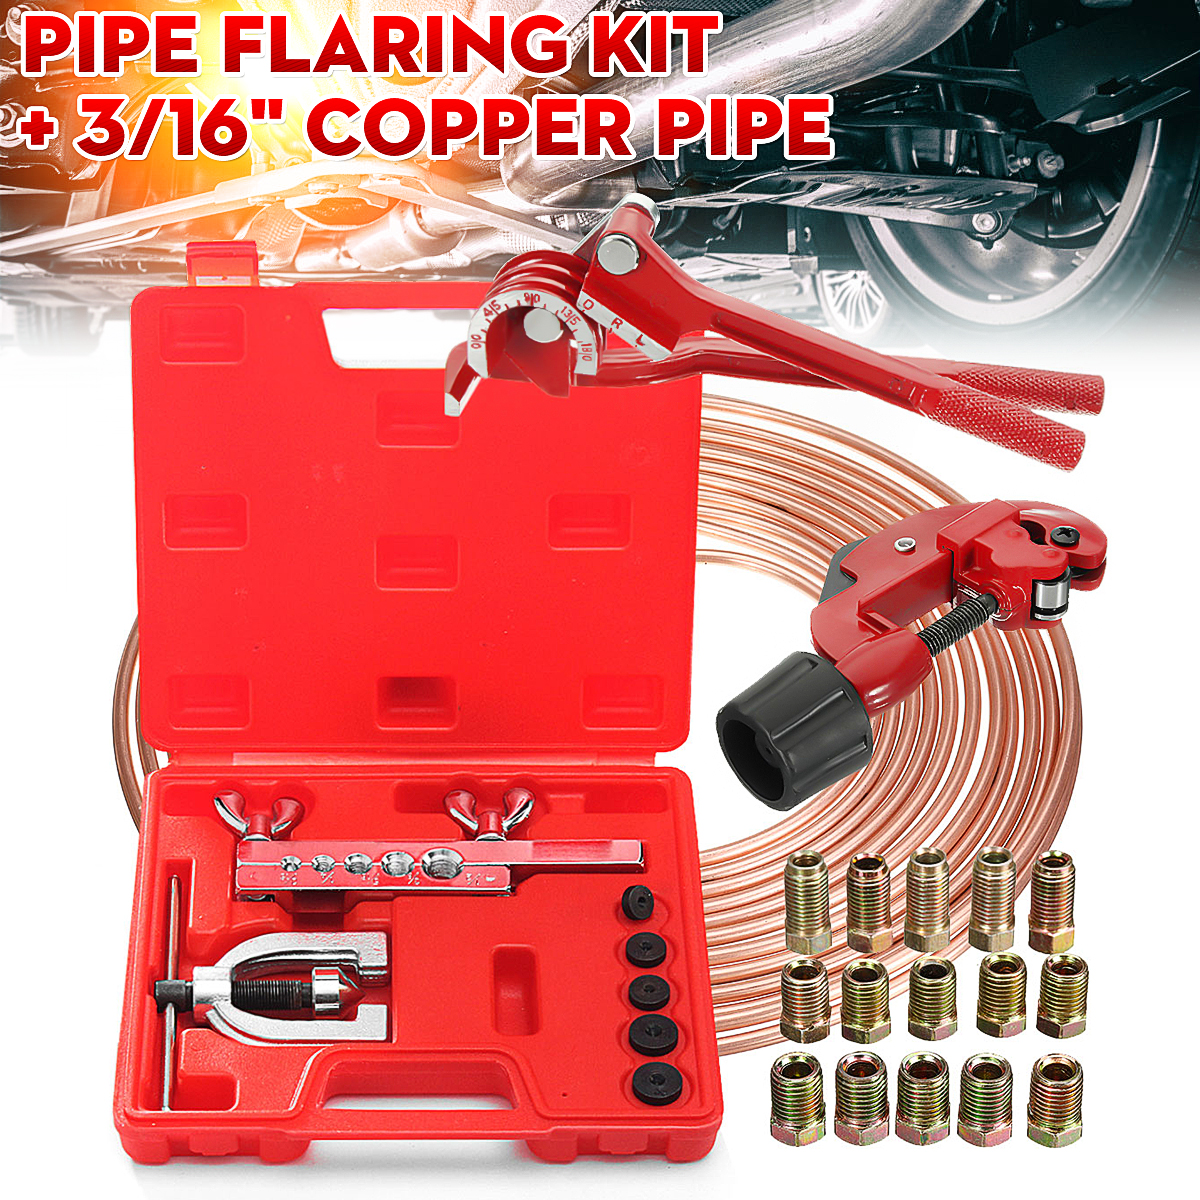 9pcs Brake Pipe Flaring Kit Fuel Repair Tool Set Tube Bender Cutter Storage Box